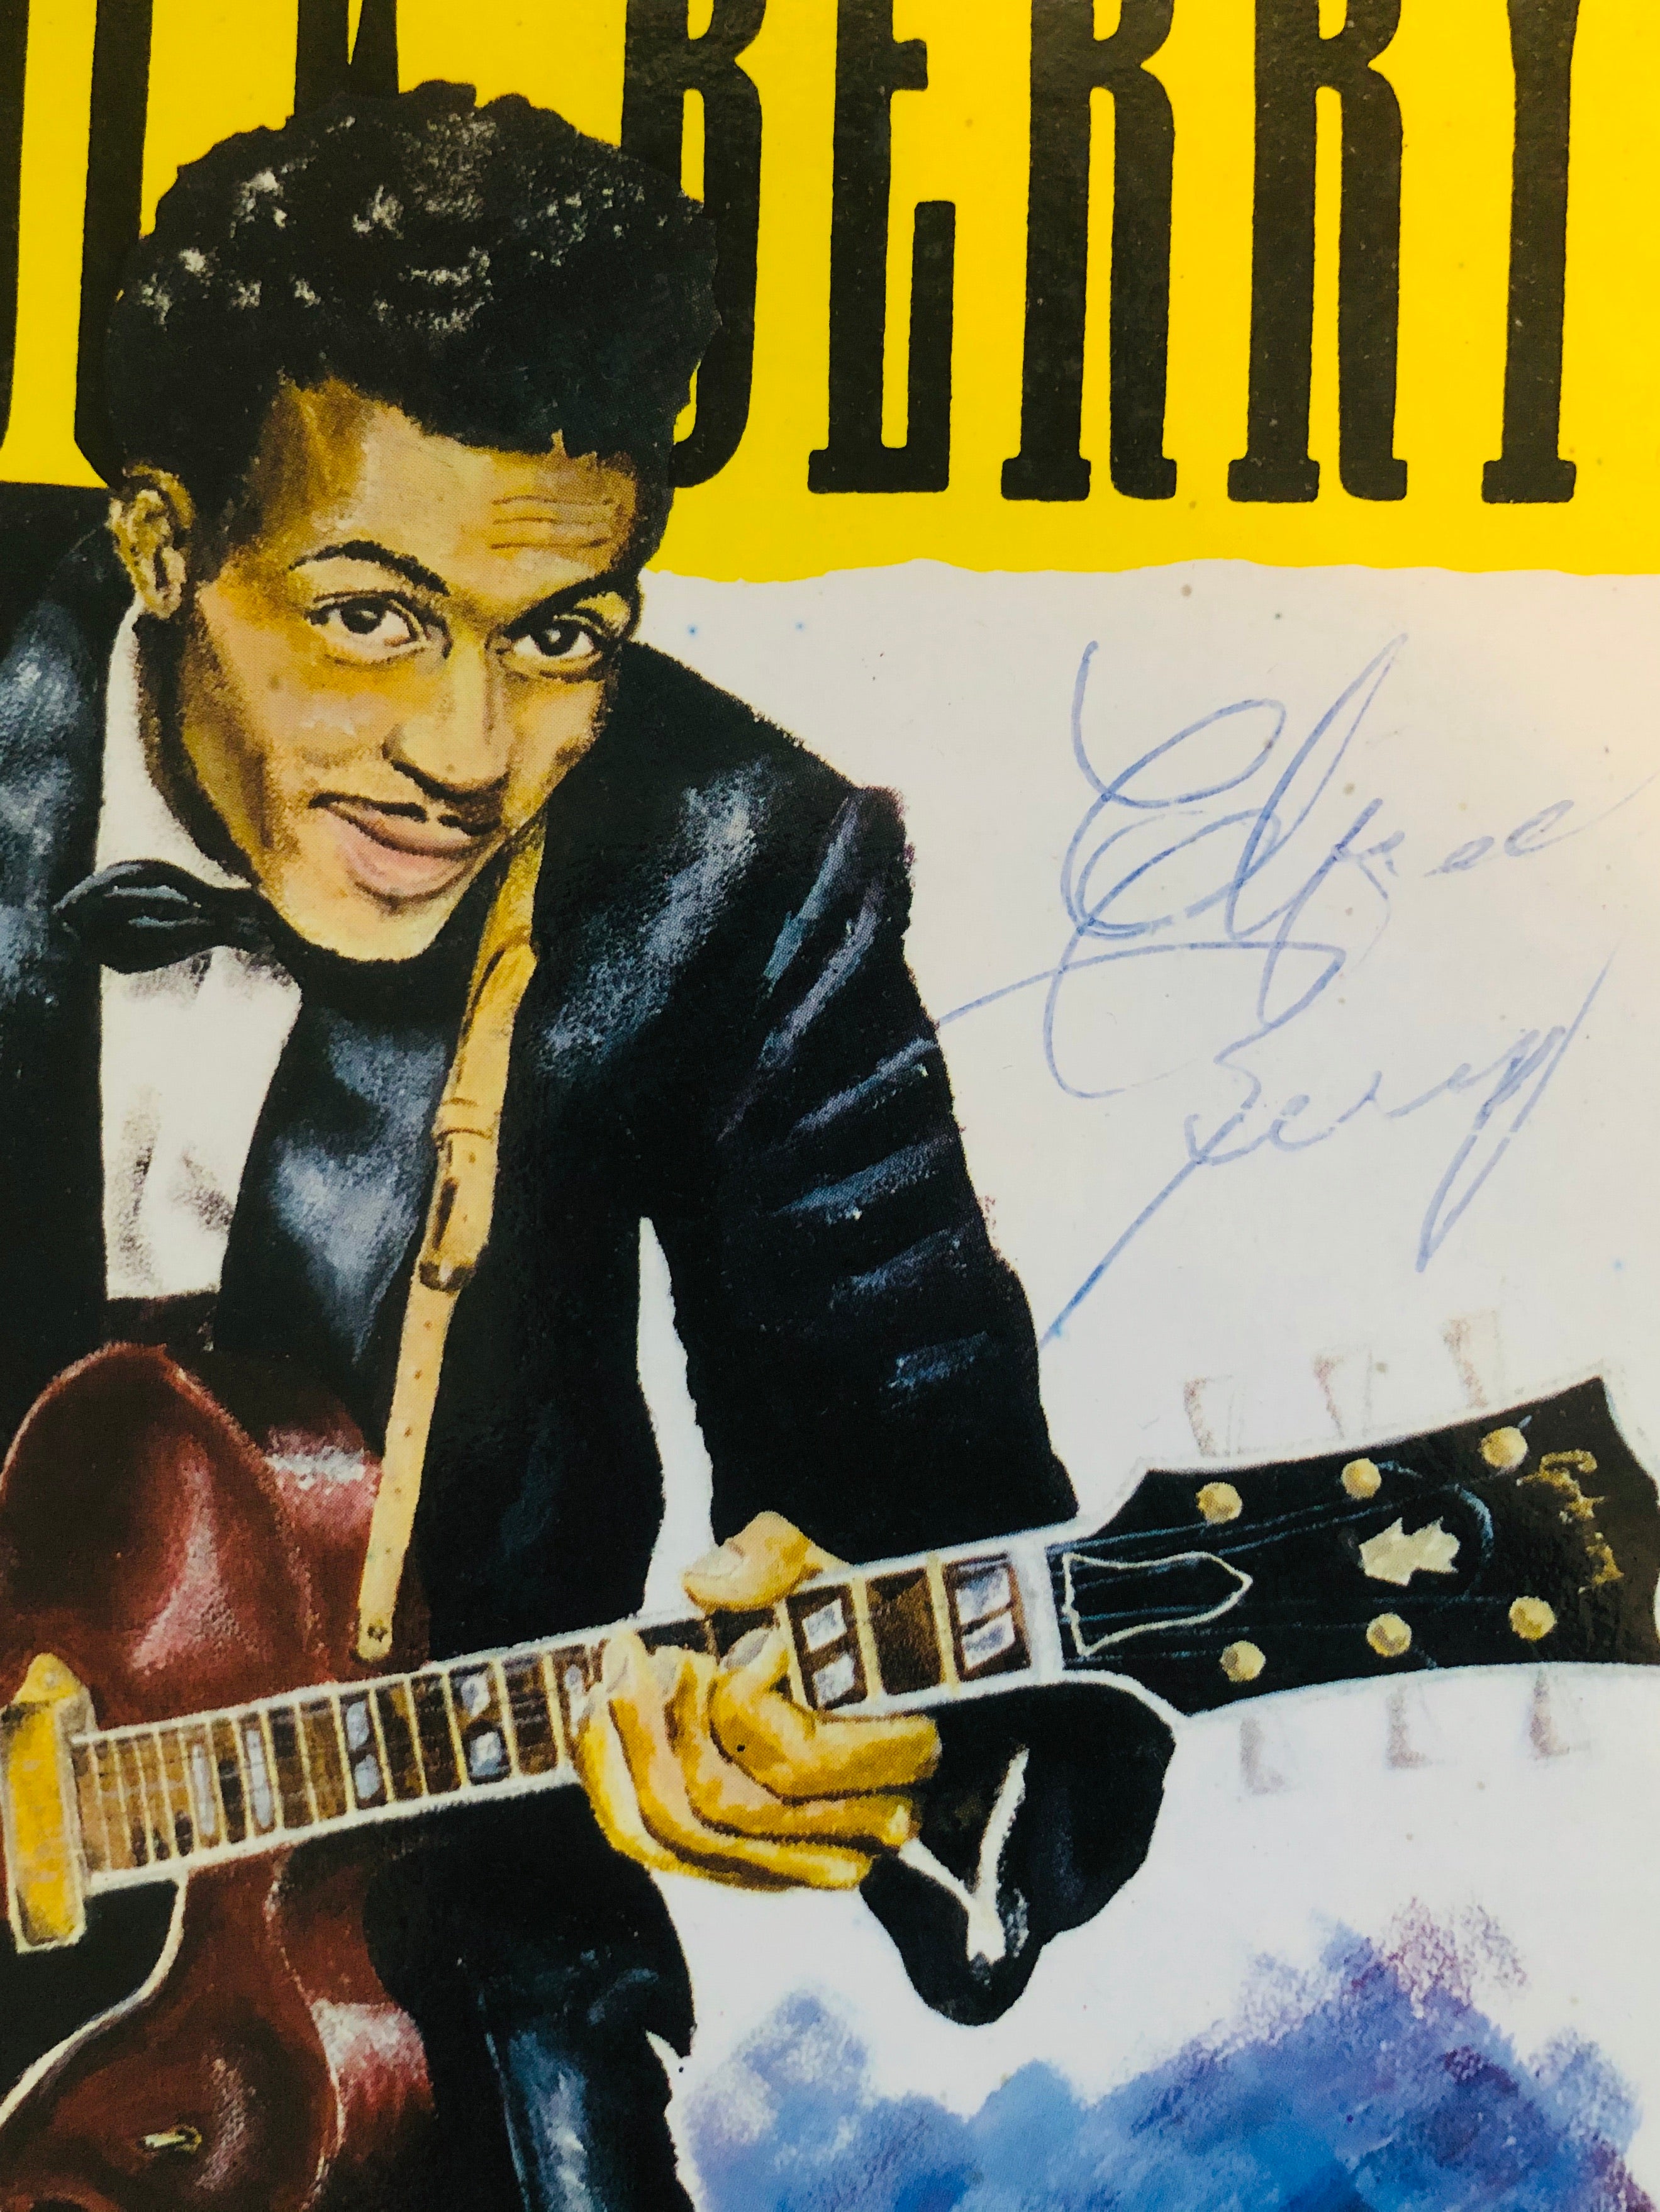 Chuck Berry rockstar legend rare signed book with COA